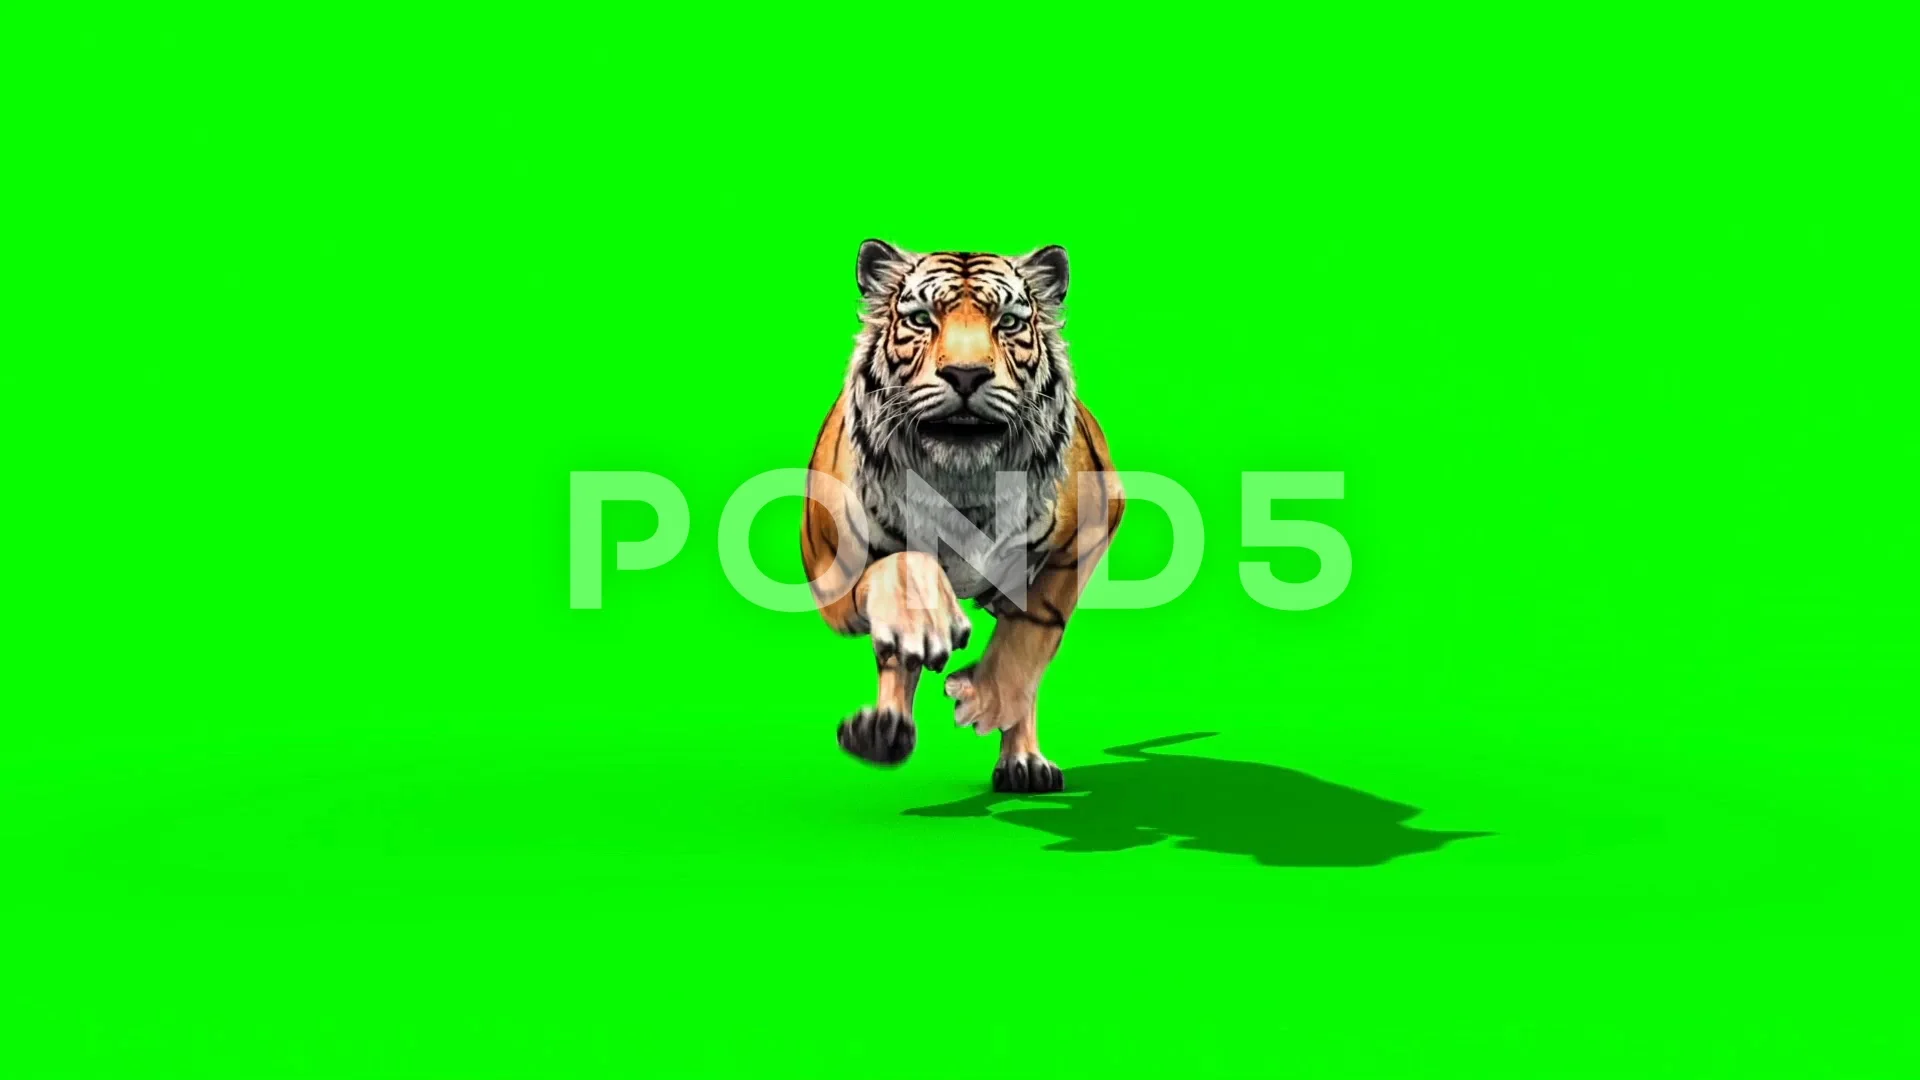 Hình nền màu xanh lá cây cho chú hổ chạy như bay trên màn hình. Bạn có muốn xem hình ảnh này để trải nghiệm cảm giác tuyệt vời và mạnh mẽ đó không?